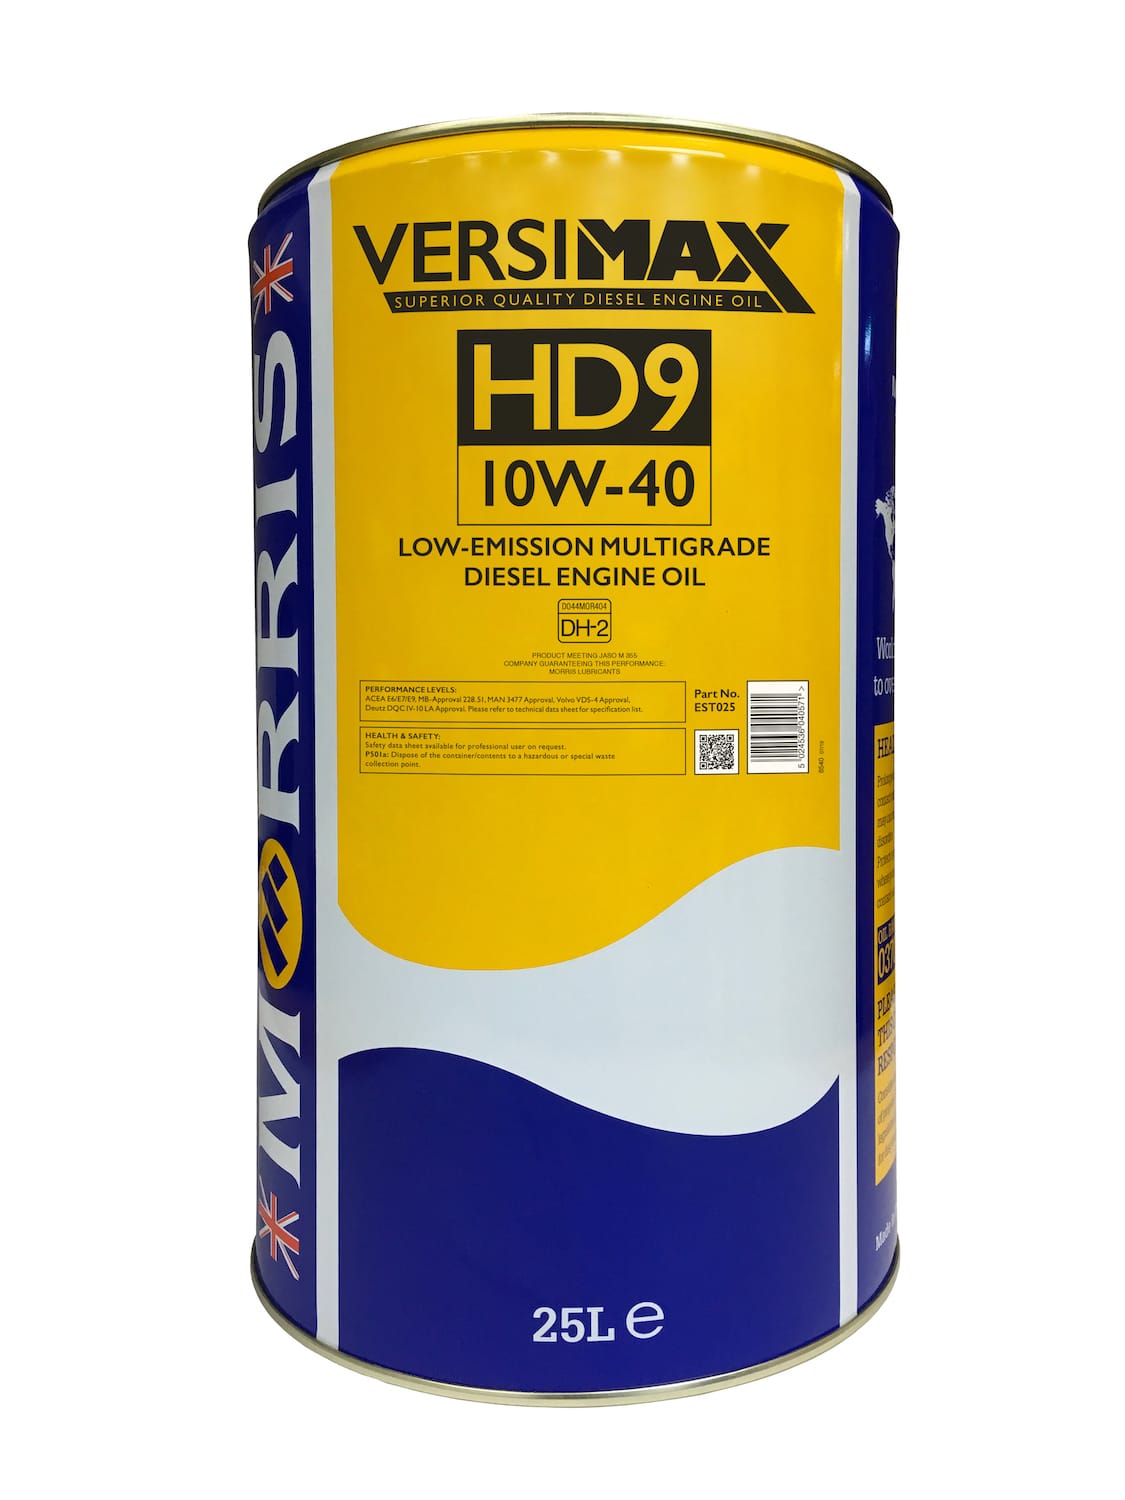 Versimax HD9 10W-40